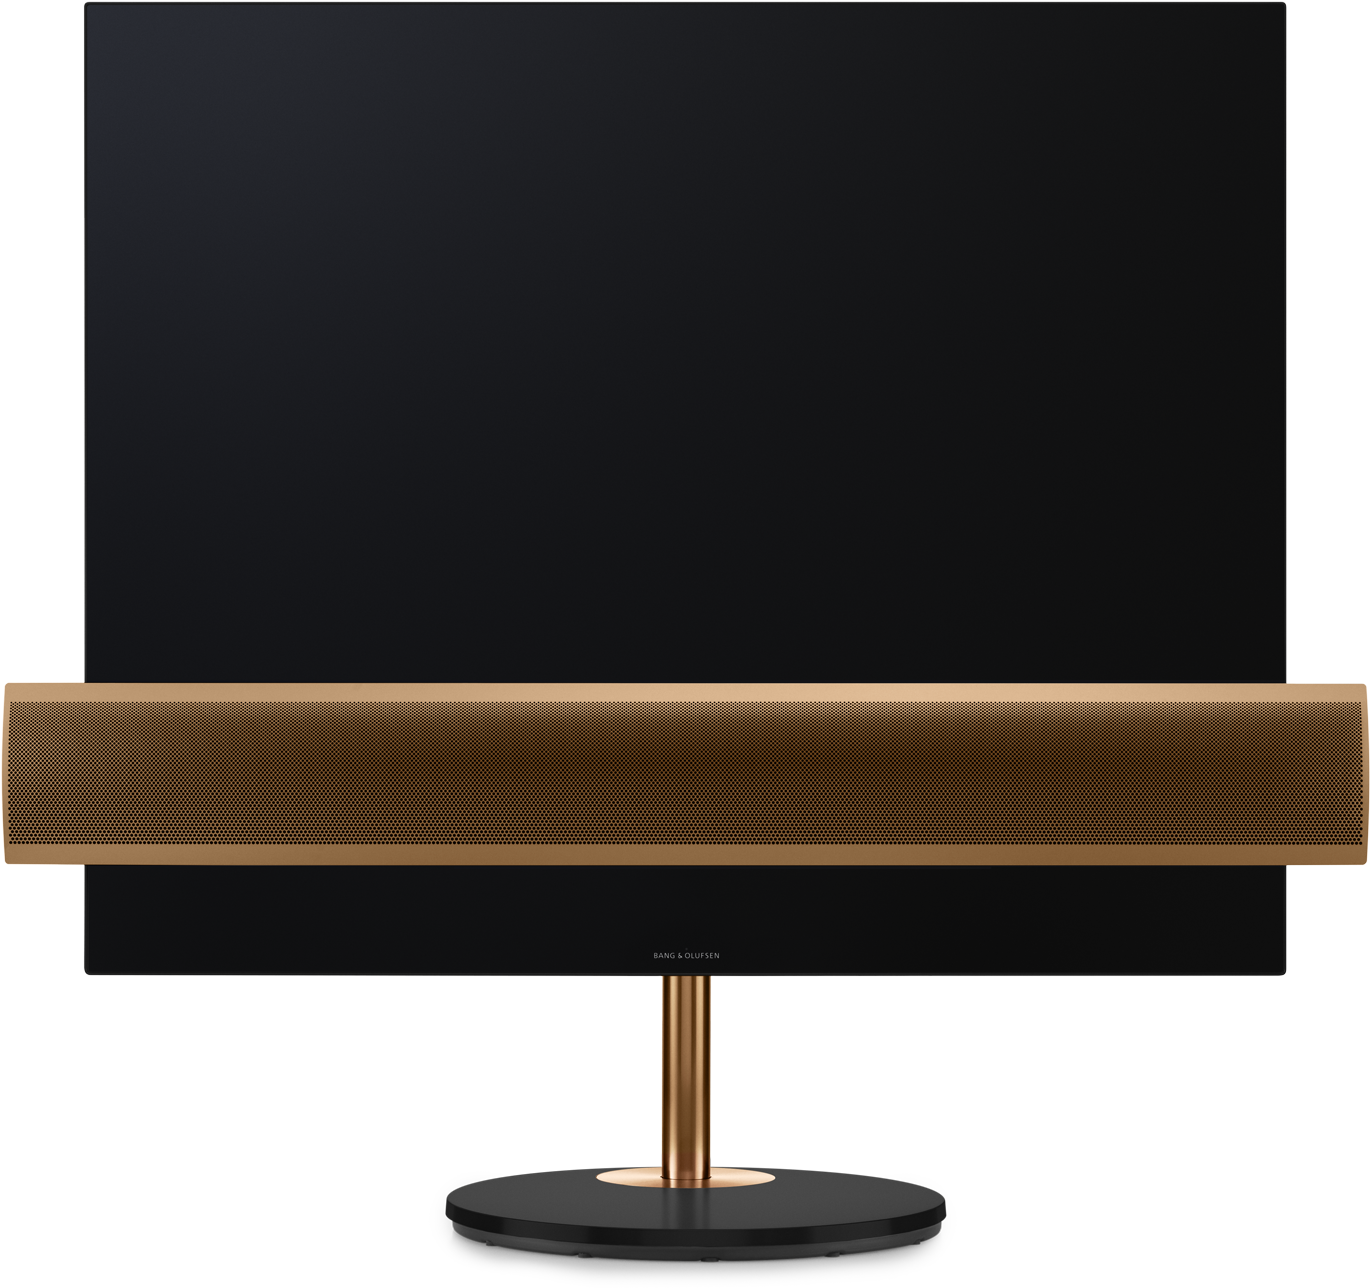 Modern Design Televisionon Stand